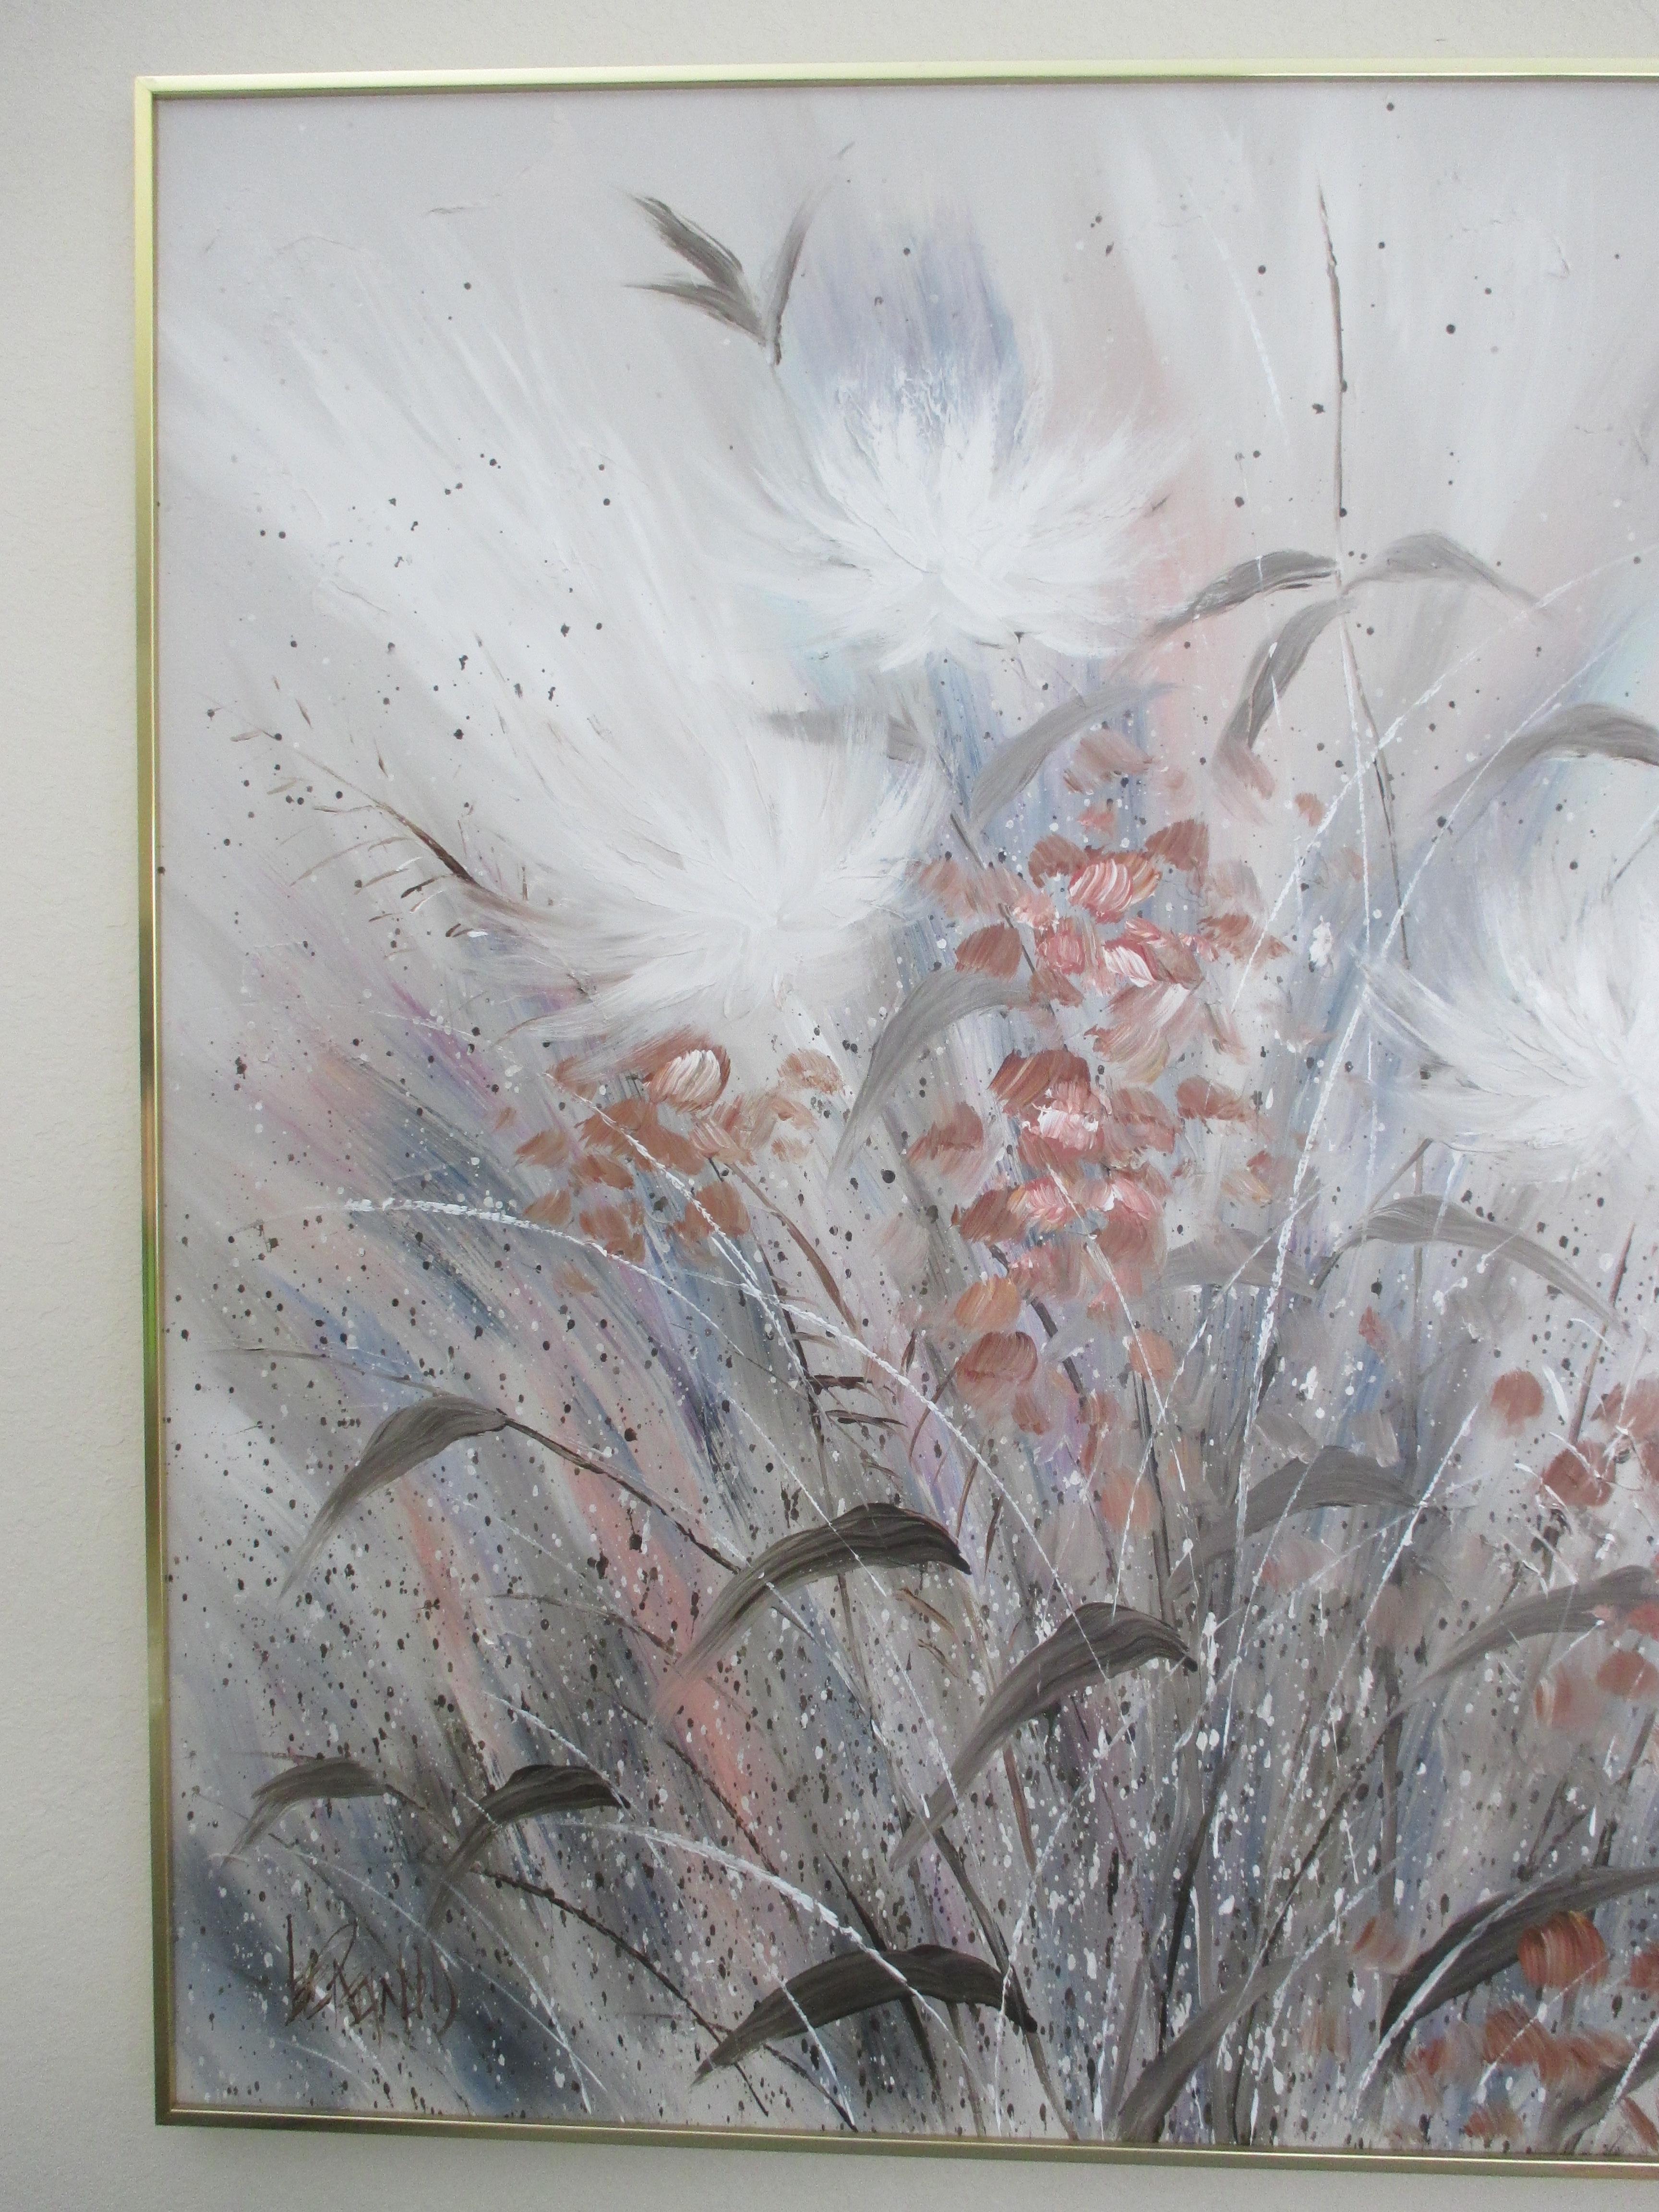 Magnifique peinture acrylique florale surdimensionnée de Lee Reynolds avec texture sur toile. La peinture est encadrée de métal doré et signée dans le coin inférieur gauche. La quincaillerie de suspension est jointe.